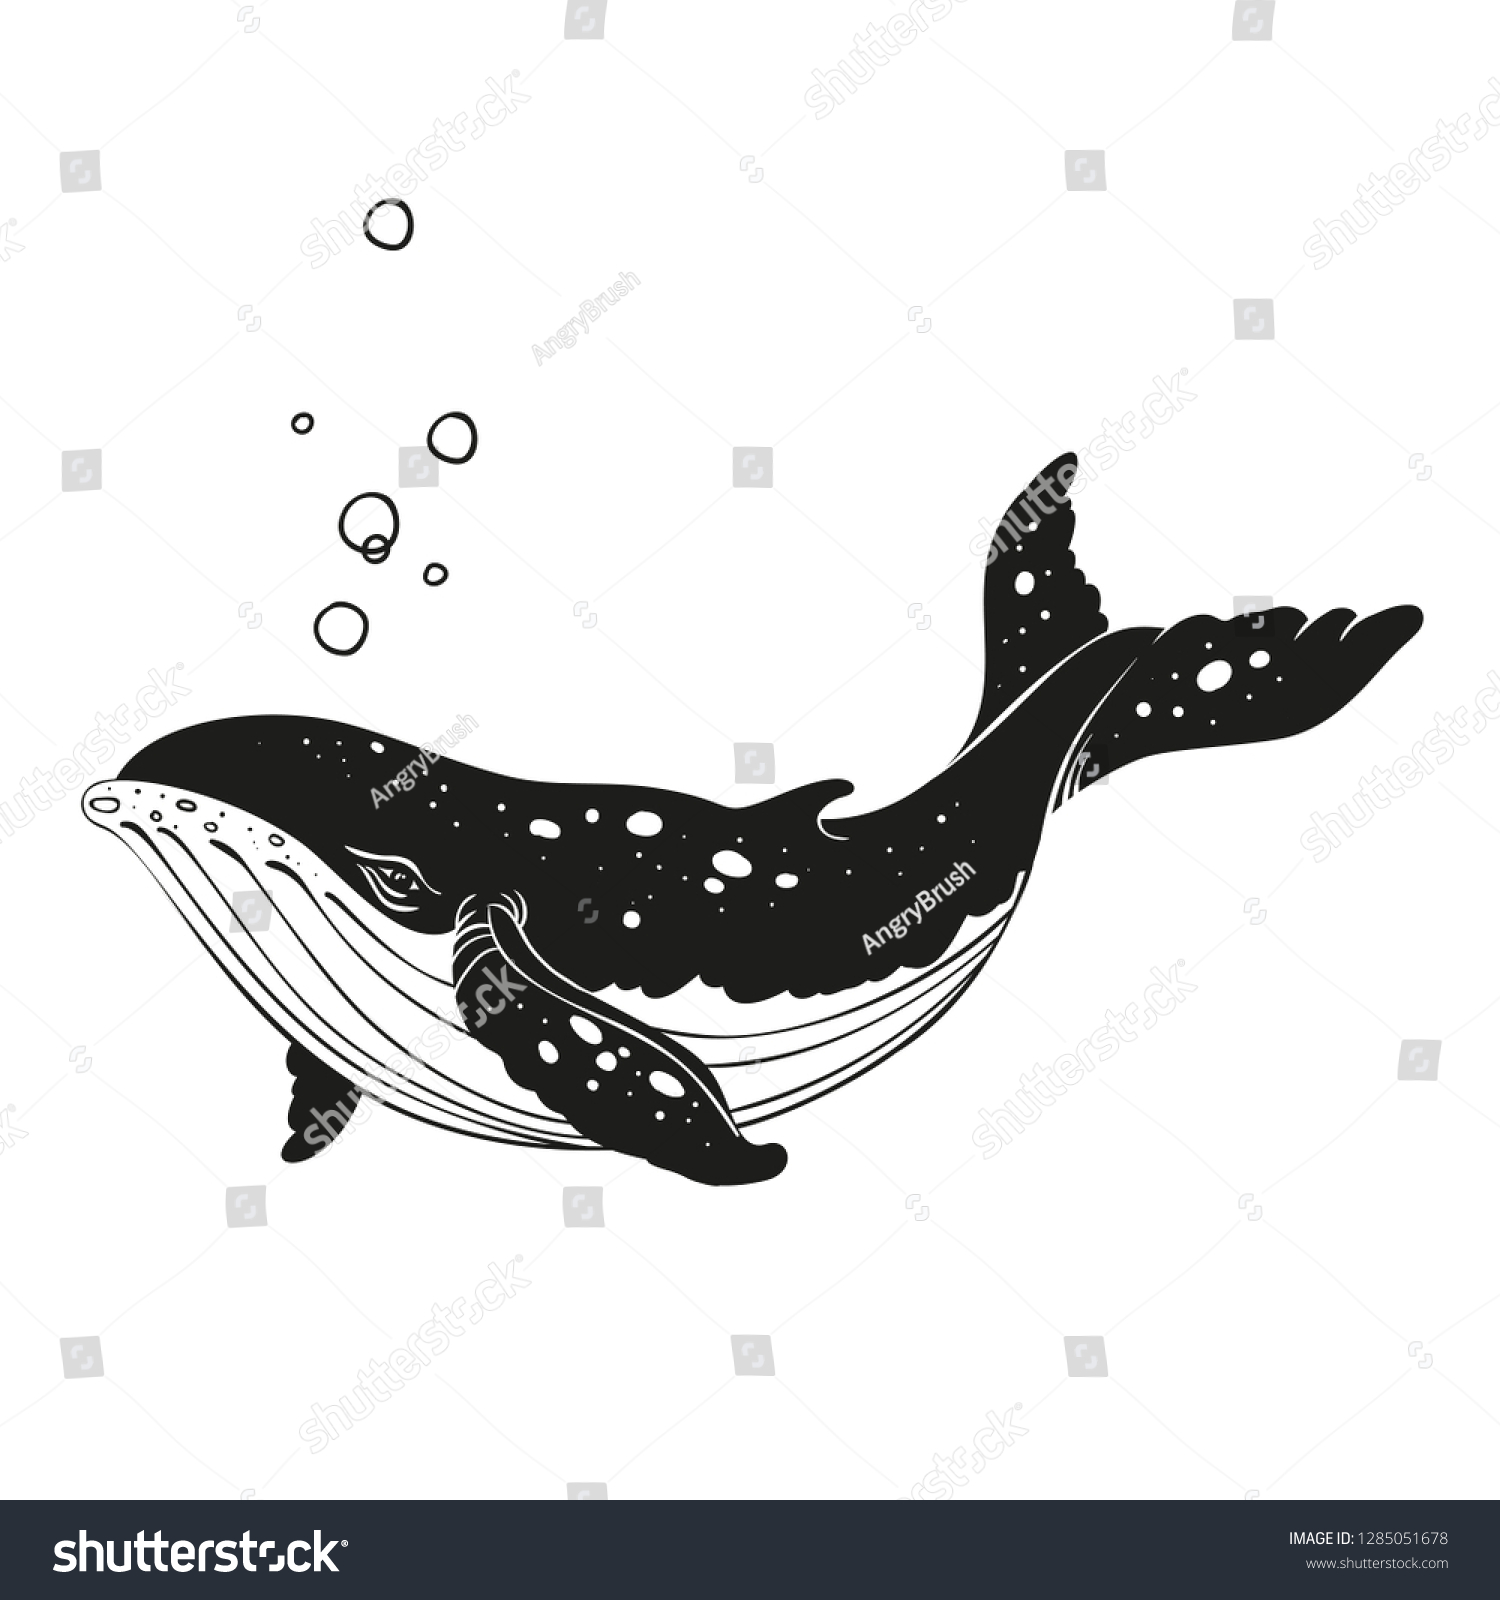 Image Vectorielle Baleine Noire Et Blanche Image Vectorielle De Stock Libre De Droits